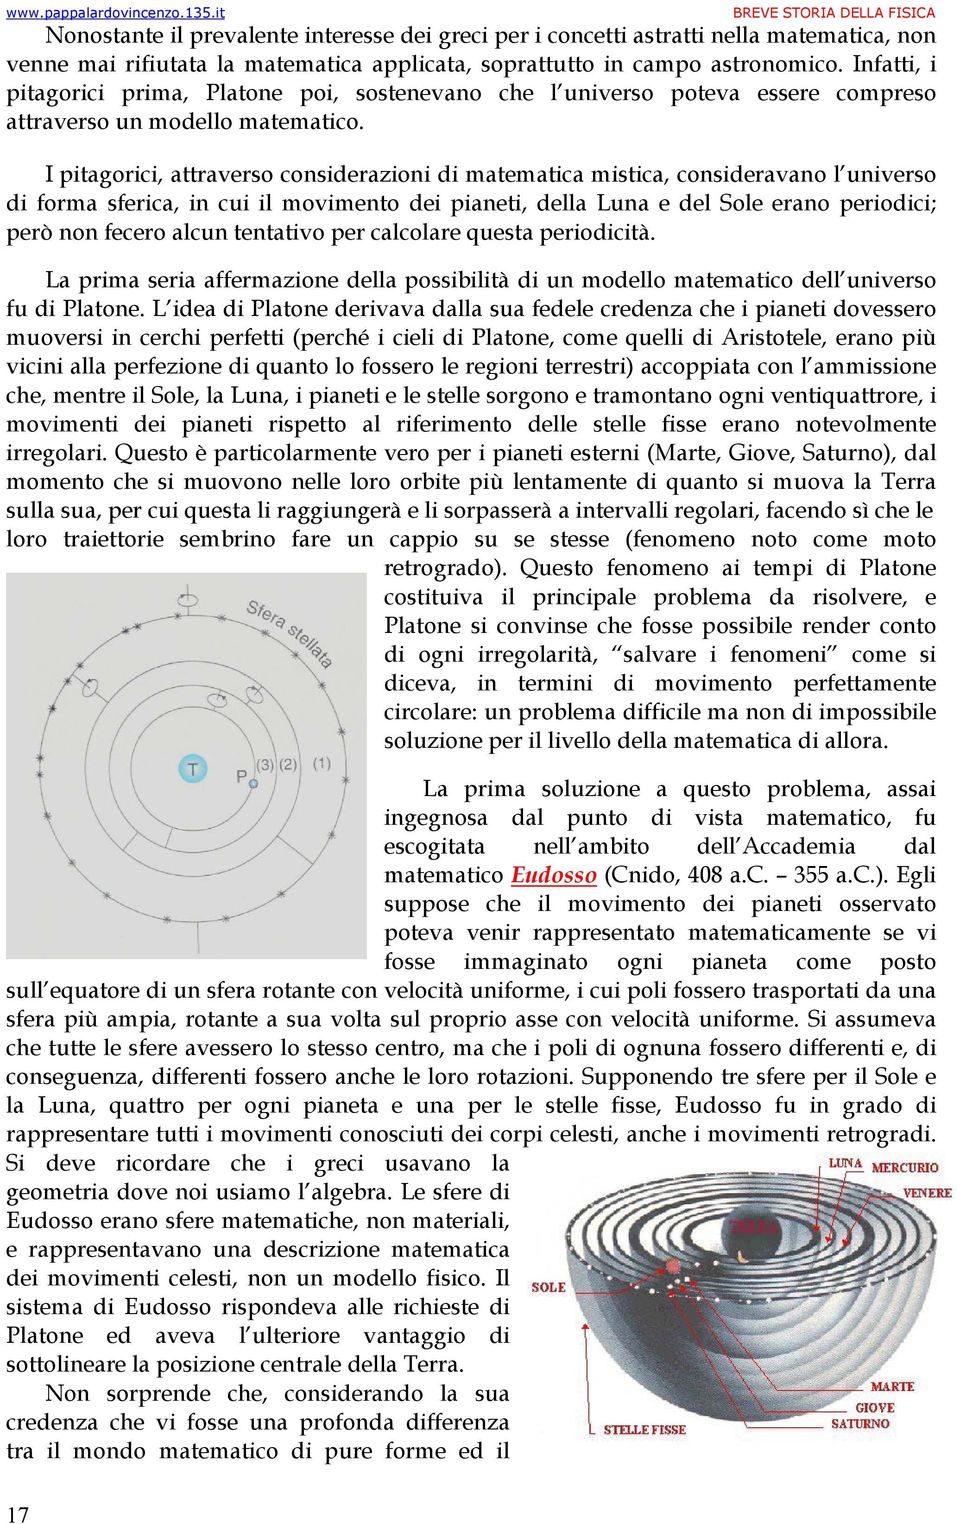 I pitagorici, attraverso considerazioni di matematica mistica, consideravano l universo di forma sferica, in cui il movimento dei pianeti, della Luna e del Sole erano periodici; però non fecero alcun